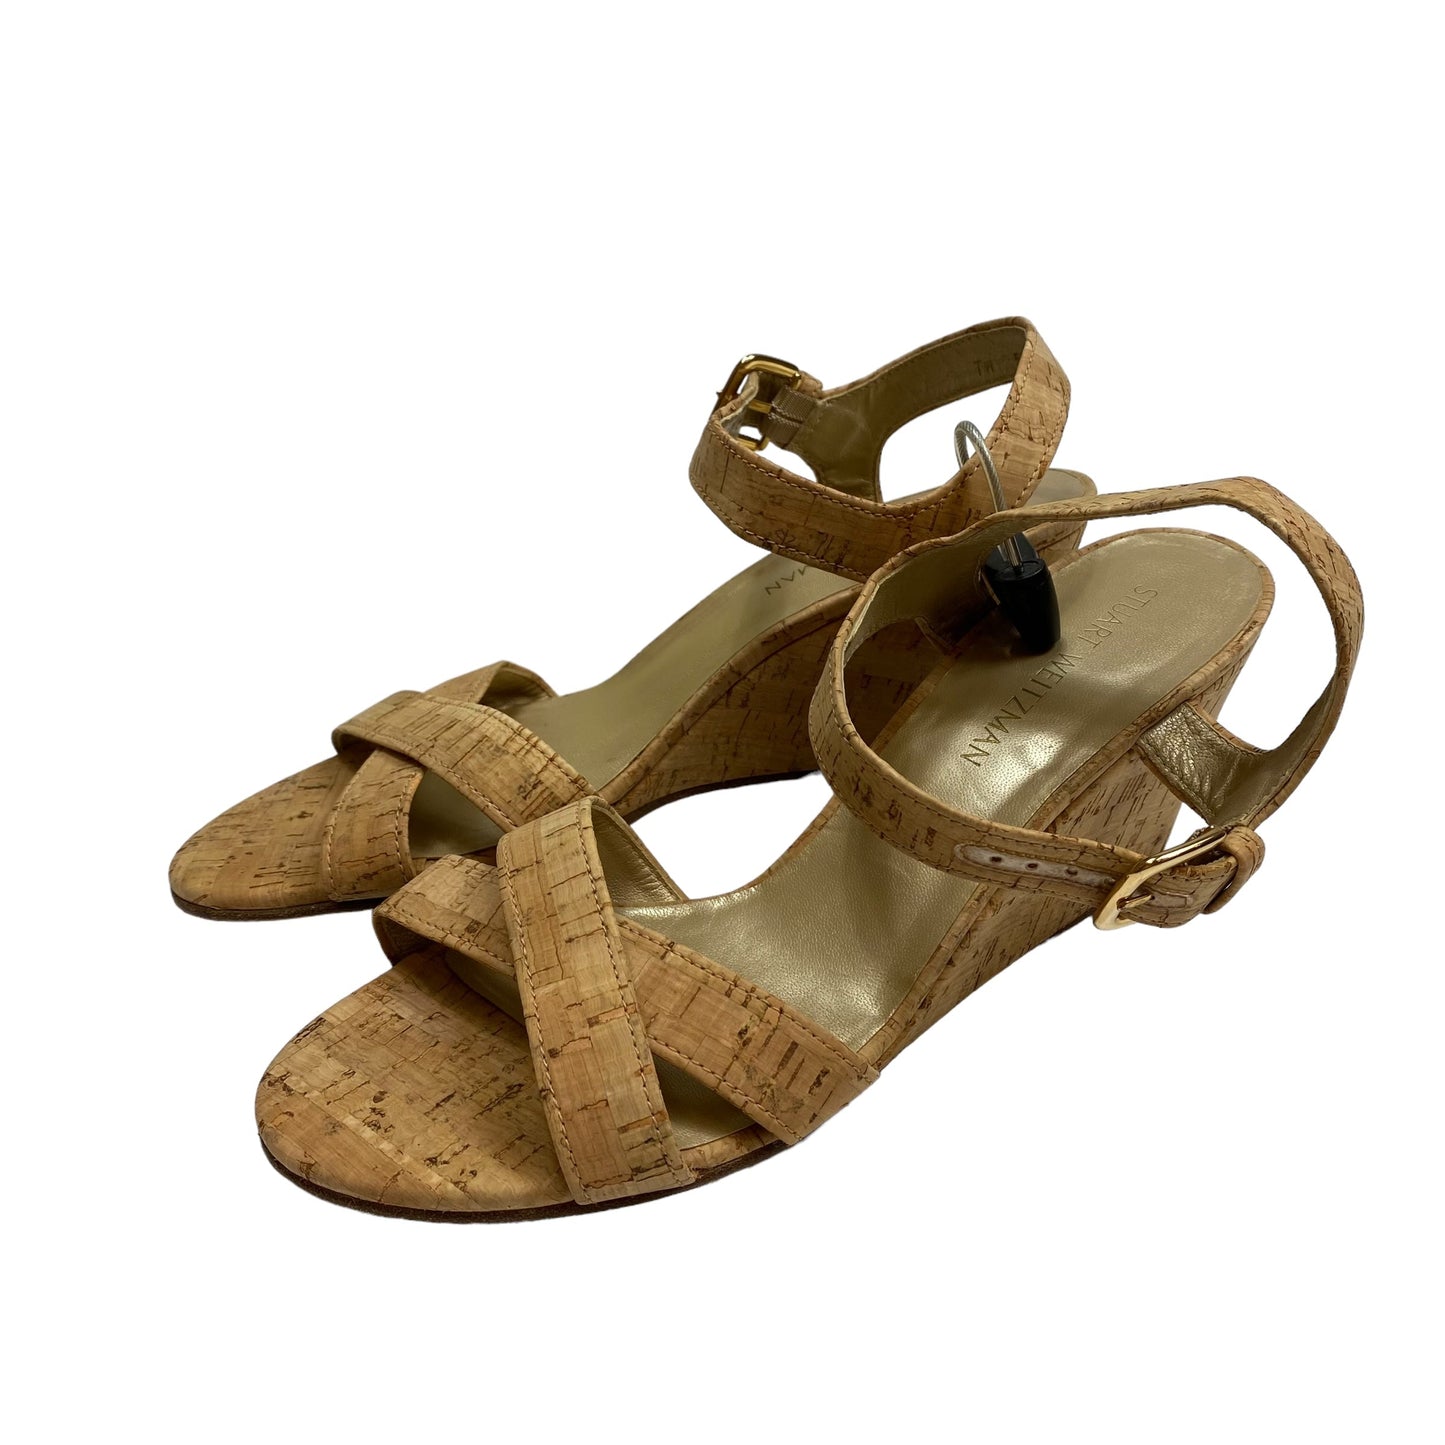 Tan Sandals Heels Wedge Stuart Weitzman, Size 11